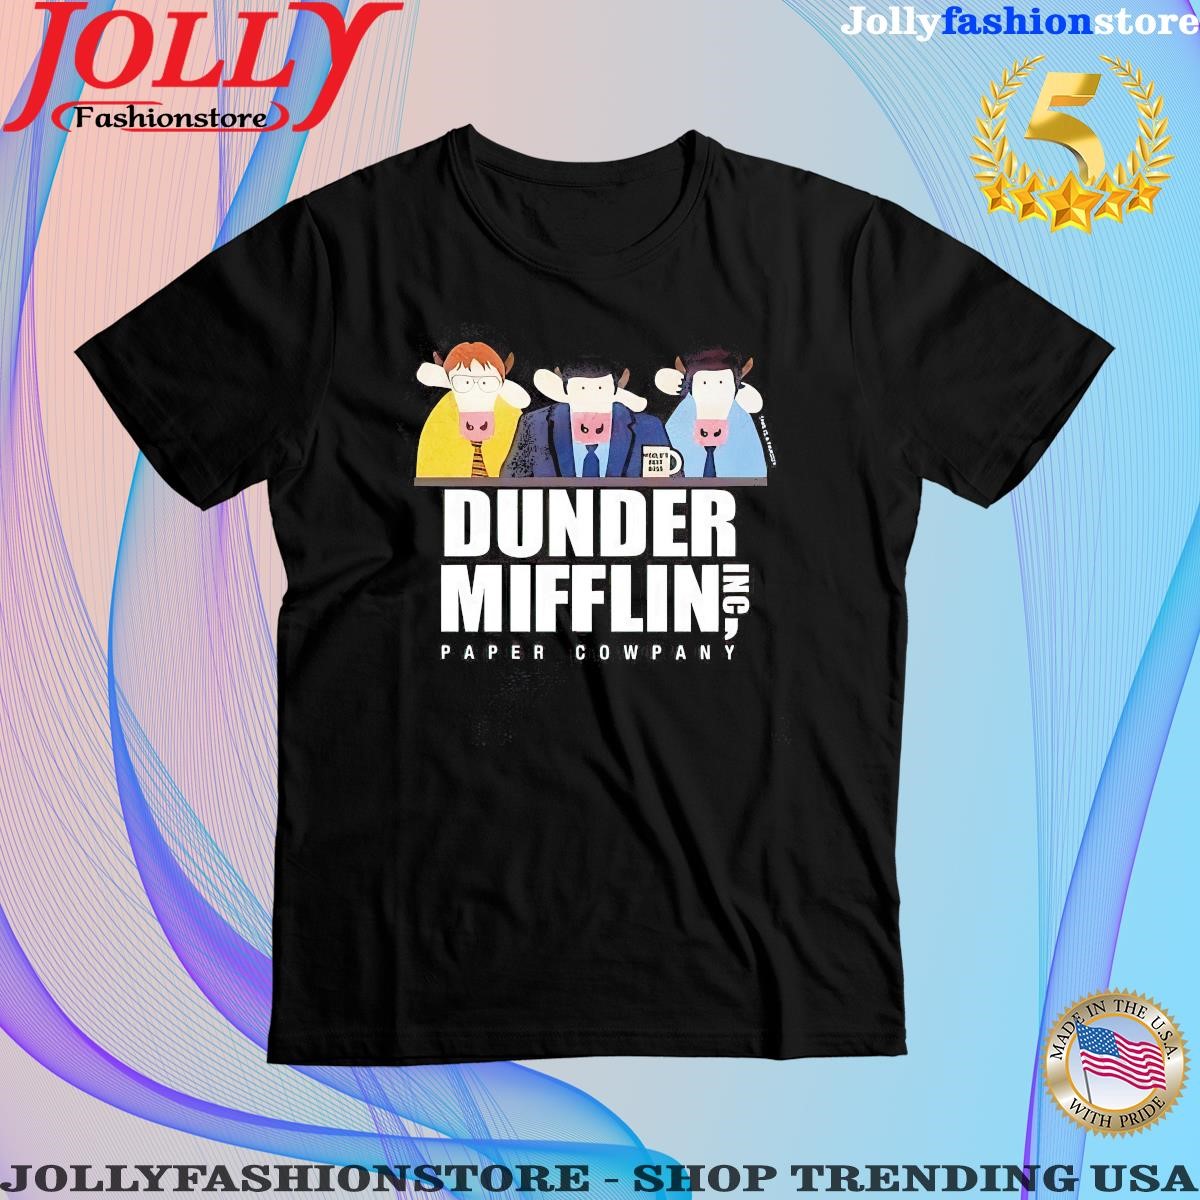 Dundermifflin World’s Best Boss This Is A Parody Dunder Mifflin Inc Paper Company Shirt